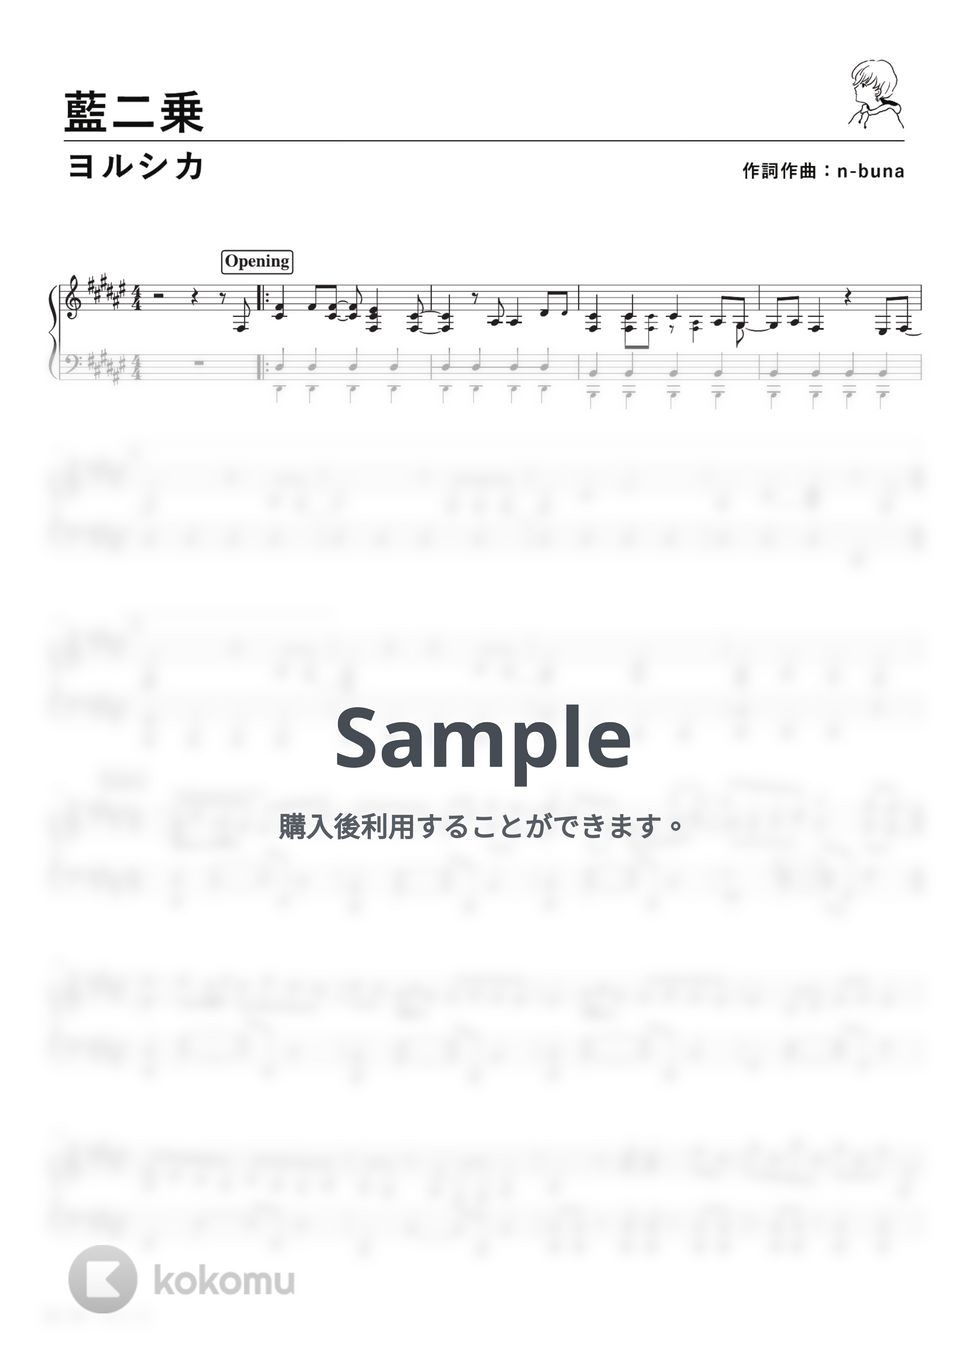 ヨルシカ - 藍二乗 (PianoSolo) by 深根 / Fukane